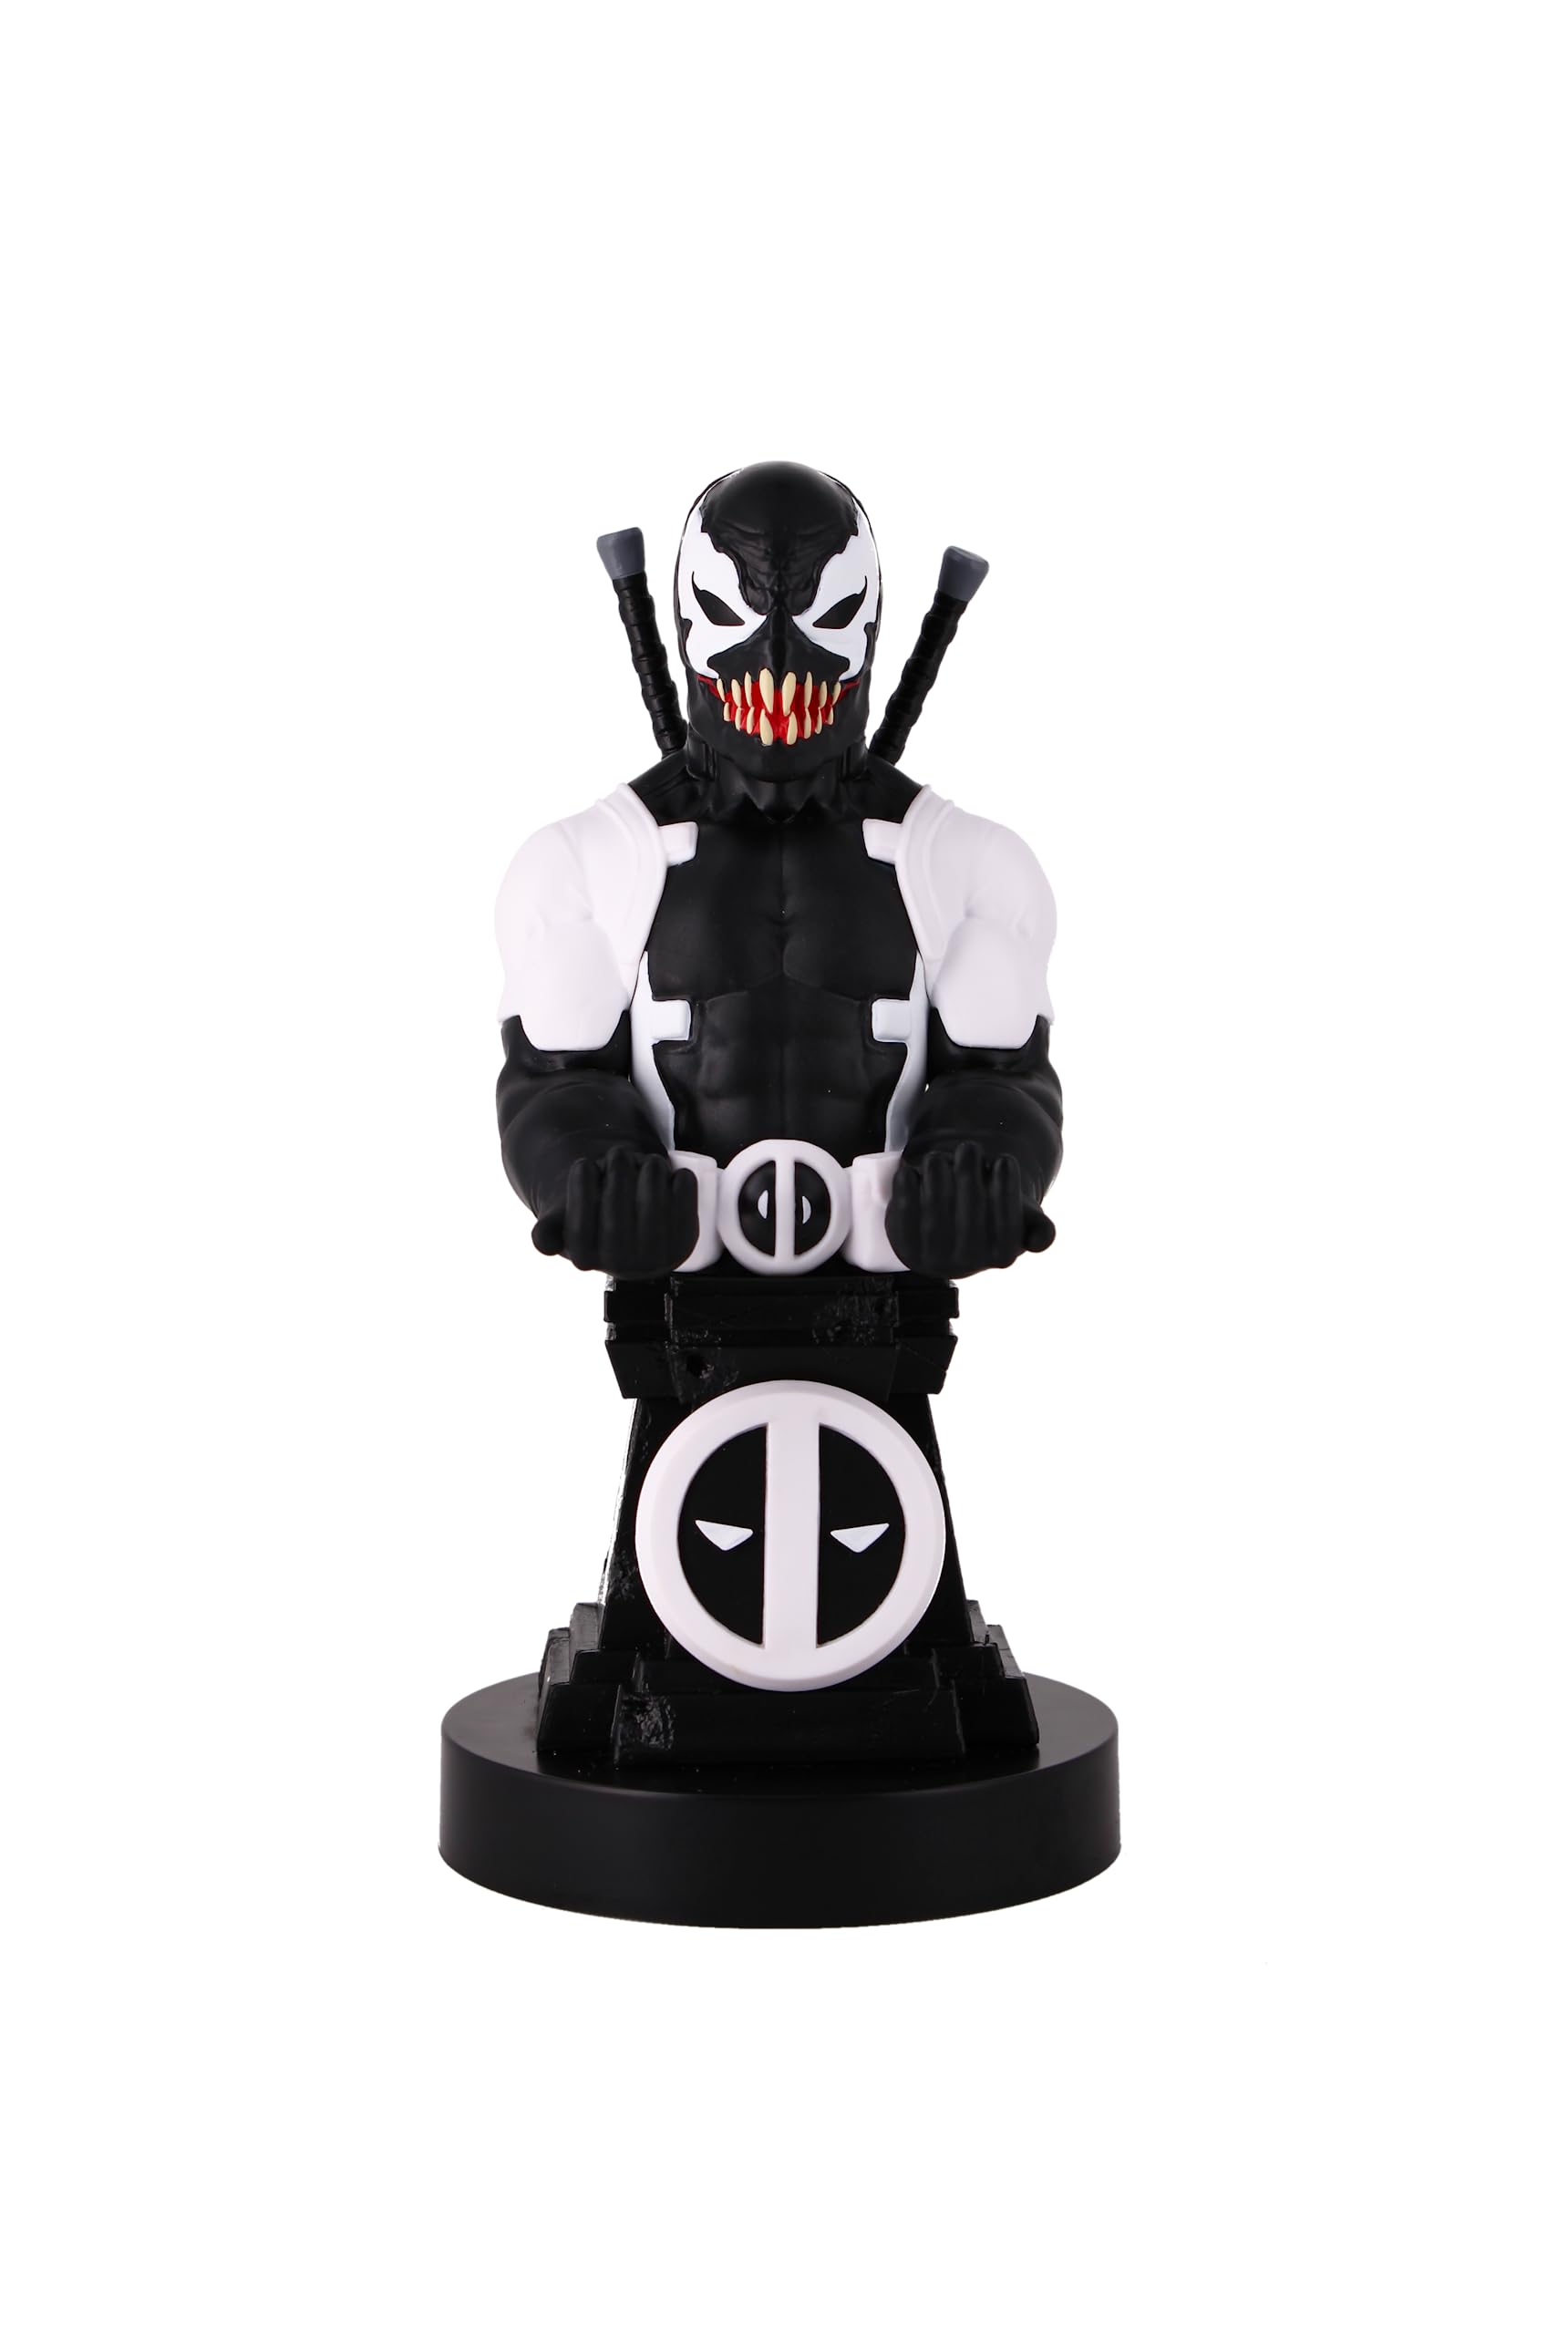 Cableguys Venom Gaming-Figur Marvel Deadpool Back in Black, Zubehör für Controller oder Smartphone-Halter, USB-Kabel im Lieferumfang enthalten, 20 cm